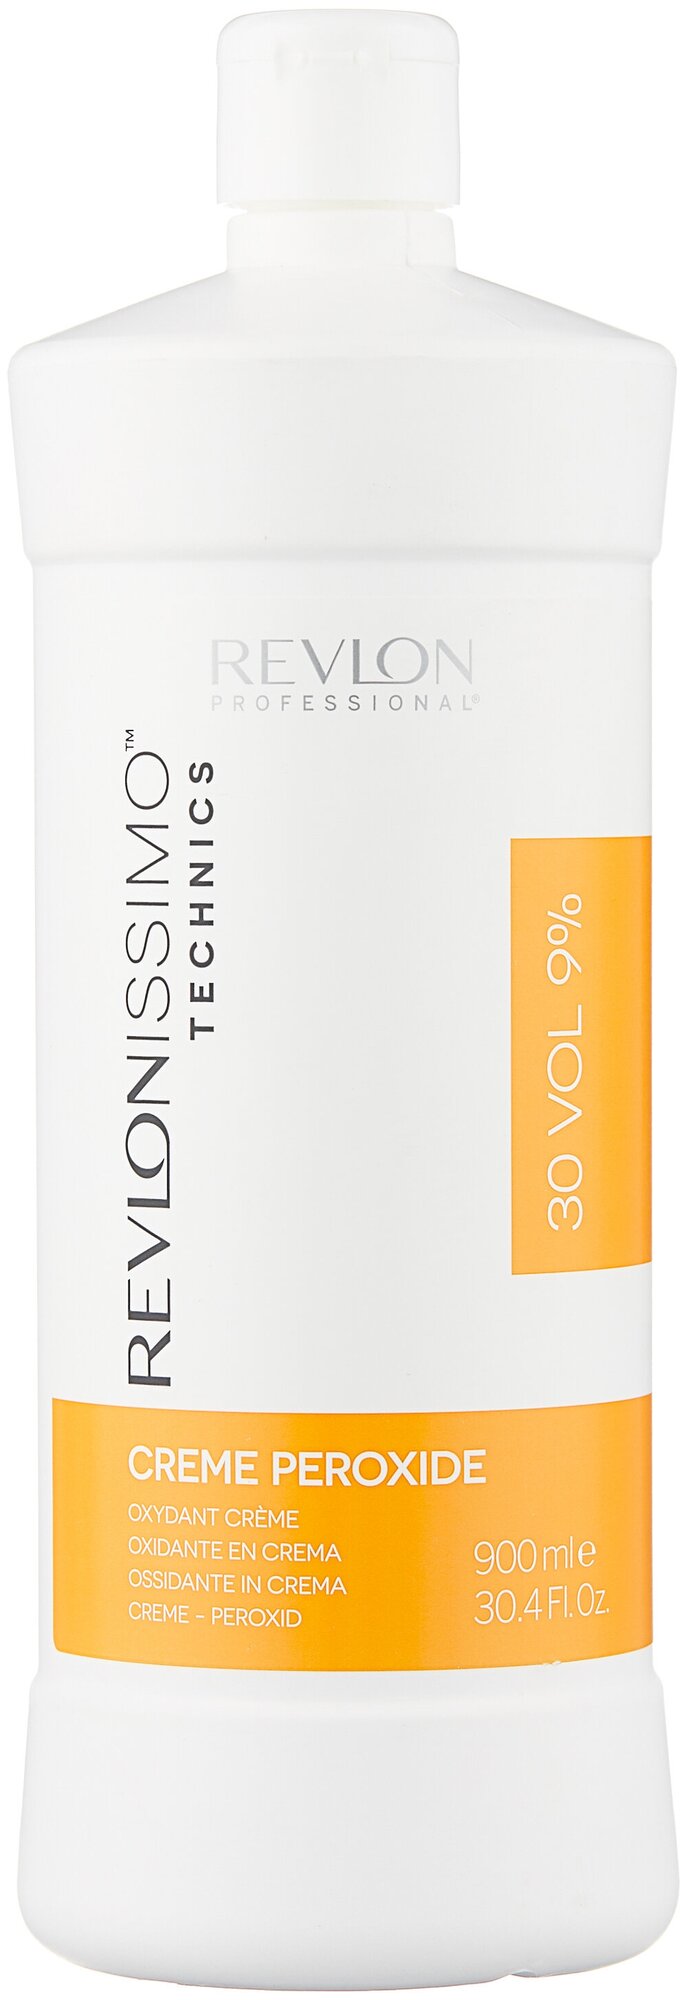 Revlon Professional Кремообразный окислитель Creme Peroxide 9% (30 VOL), 900 мл (Revlon Professional, ) - фото №1